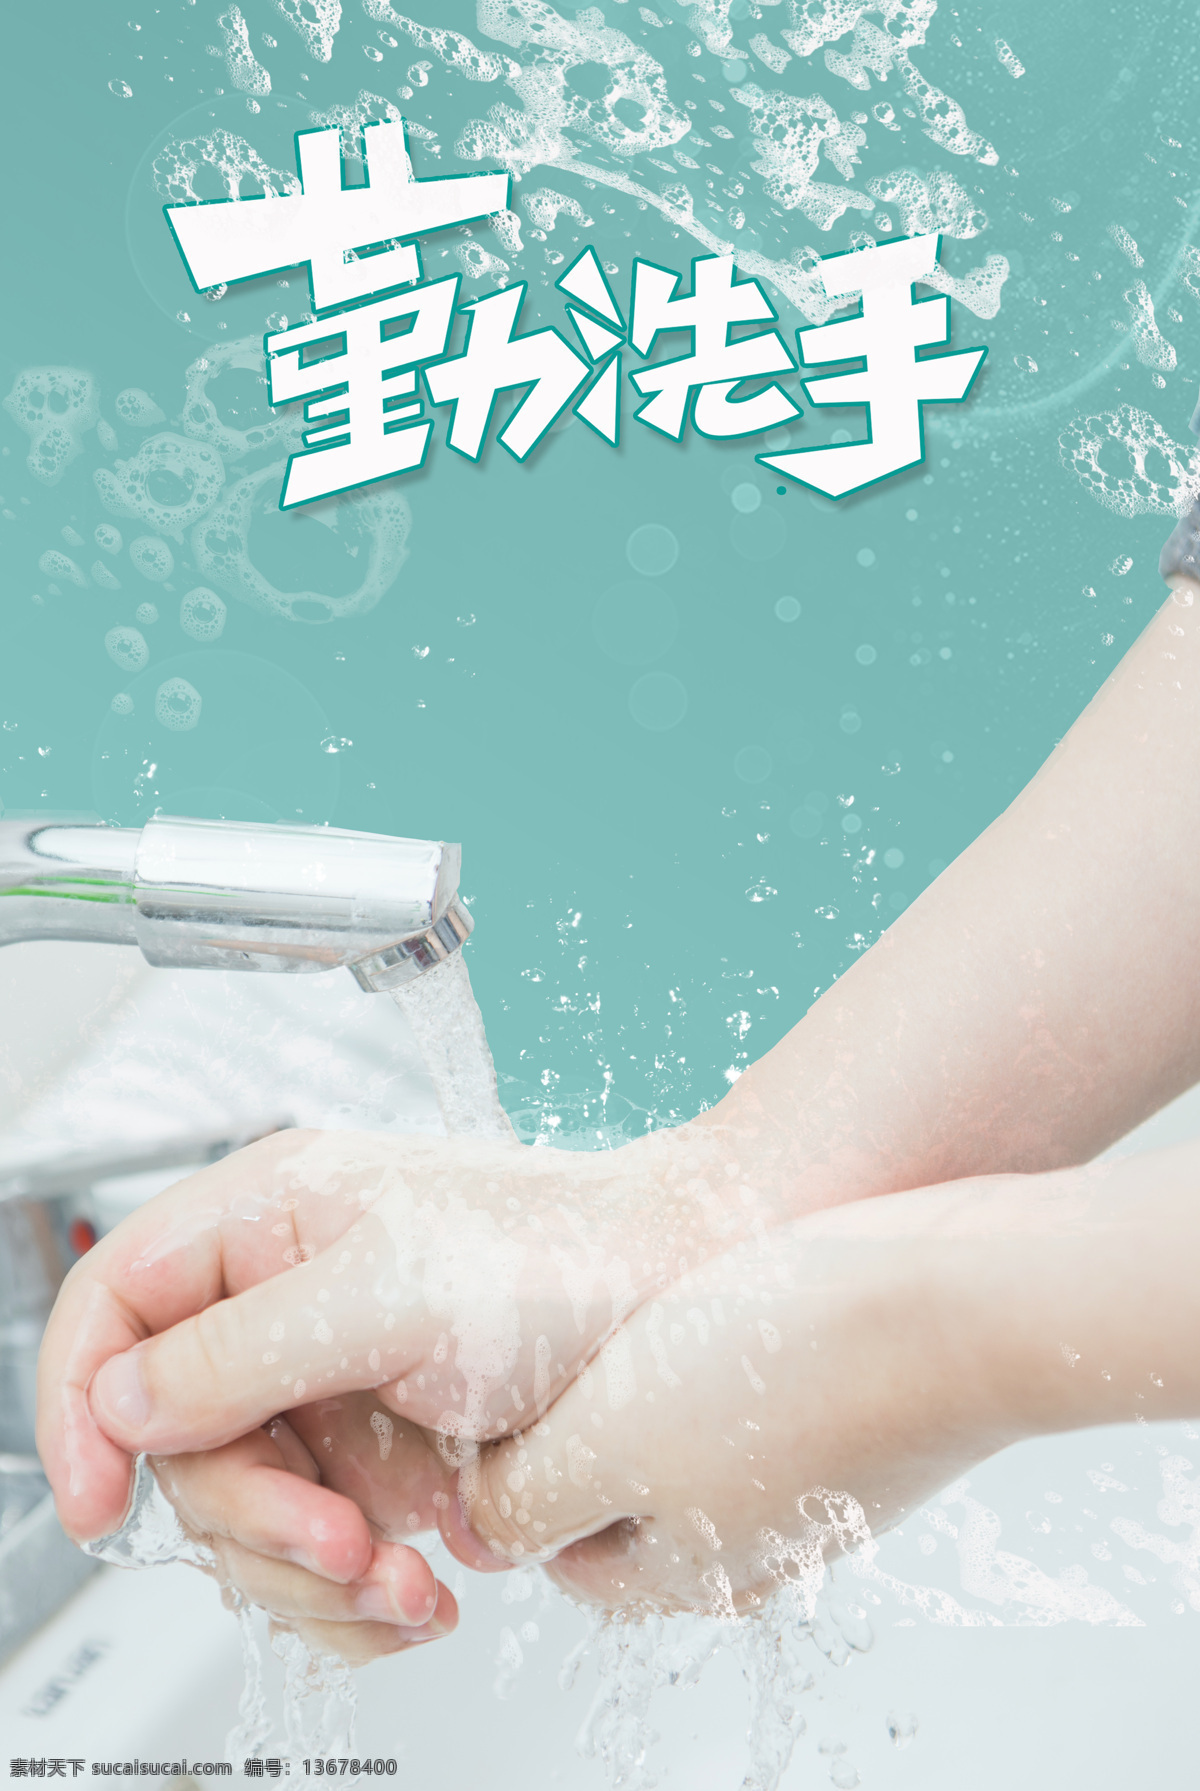 勤洗手 洗手 洗 手 卫生 生活百科 医疗保健